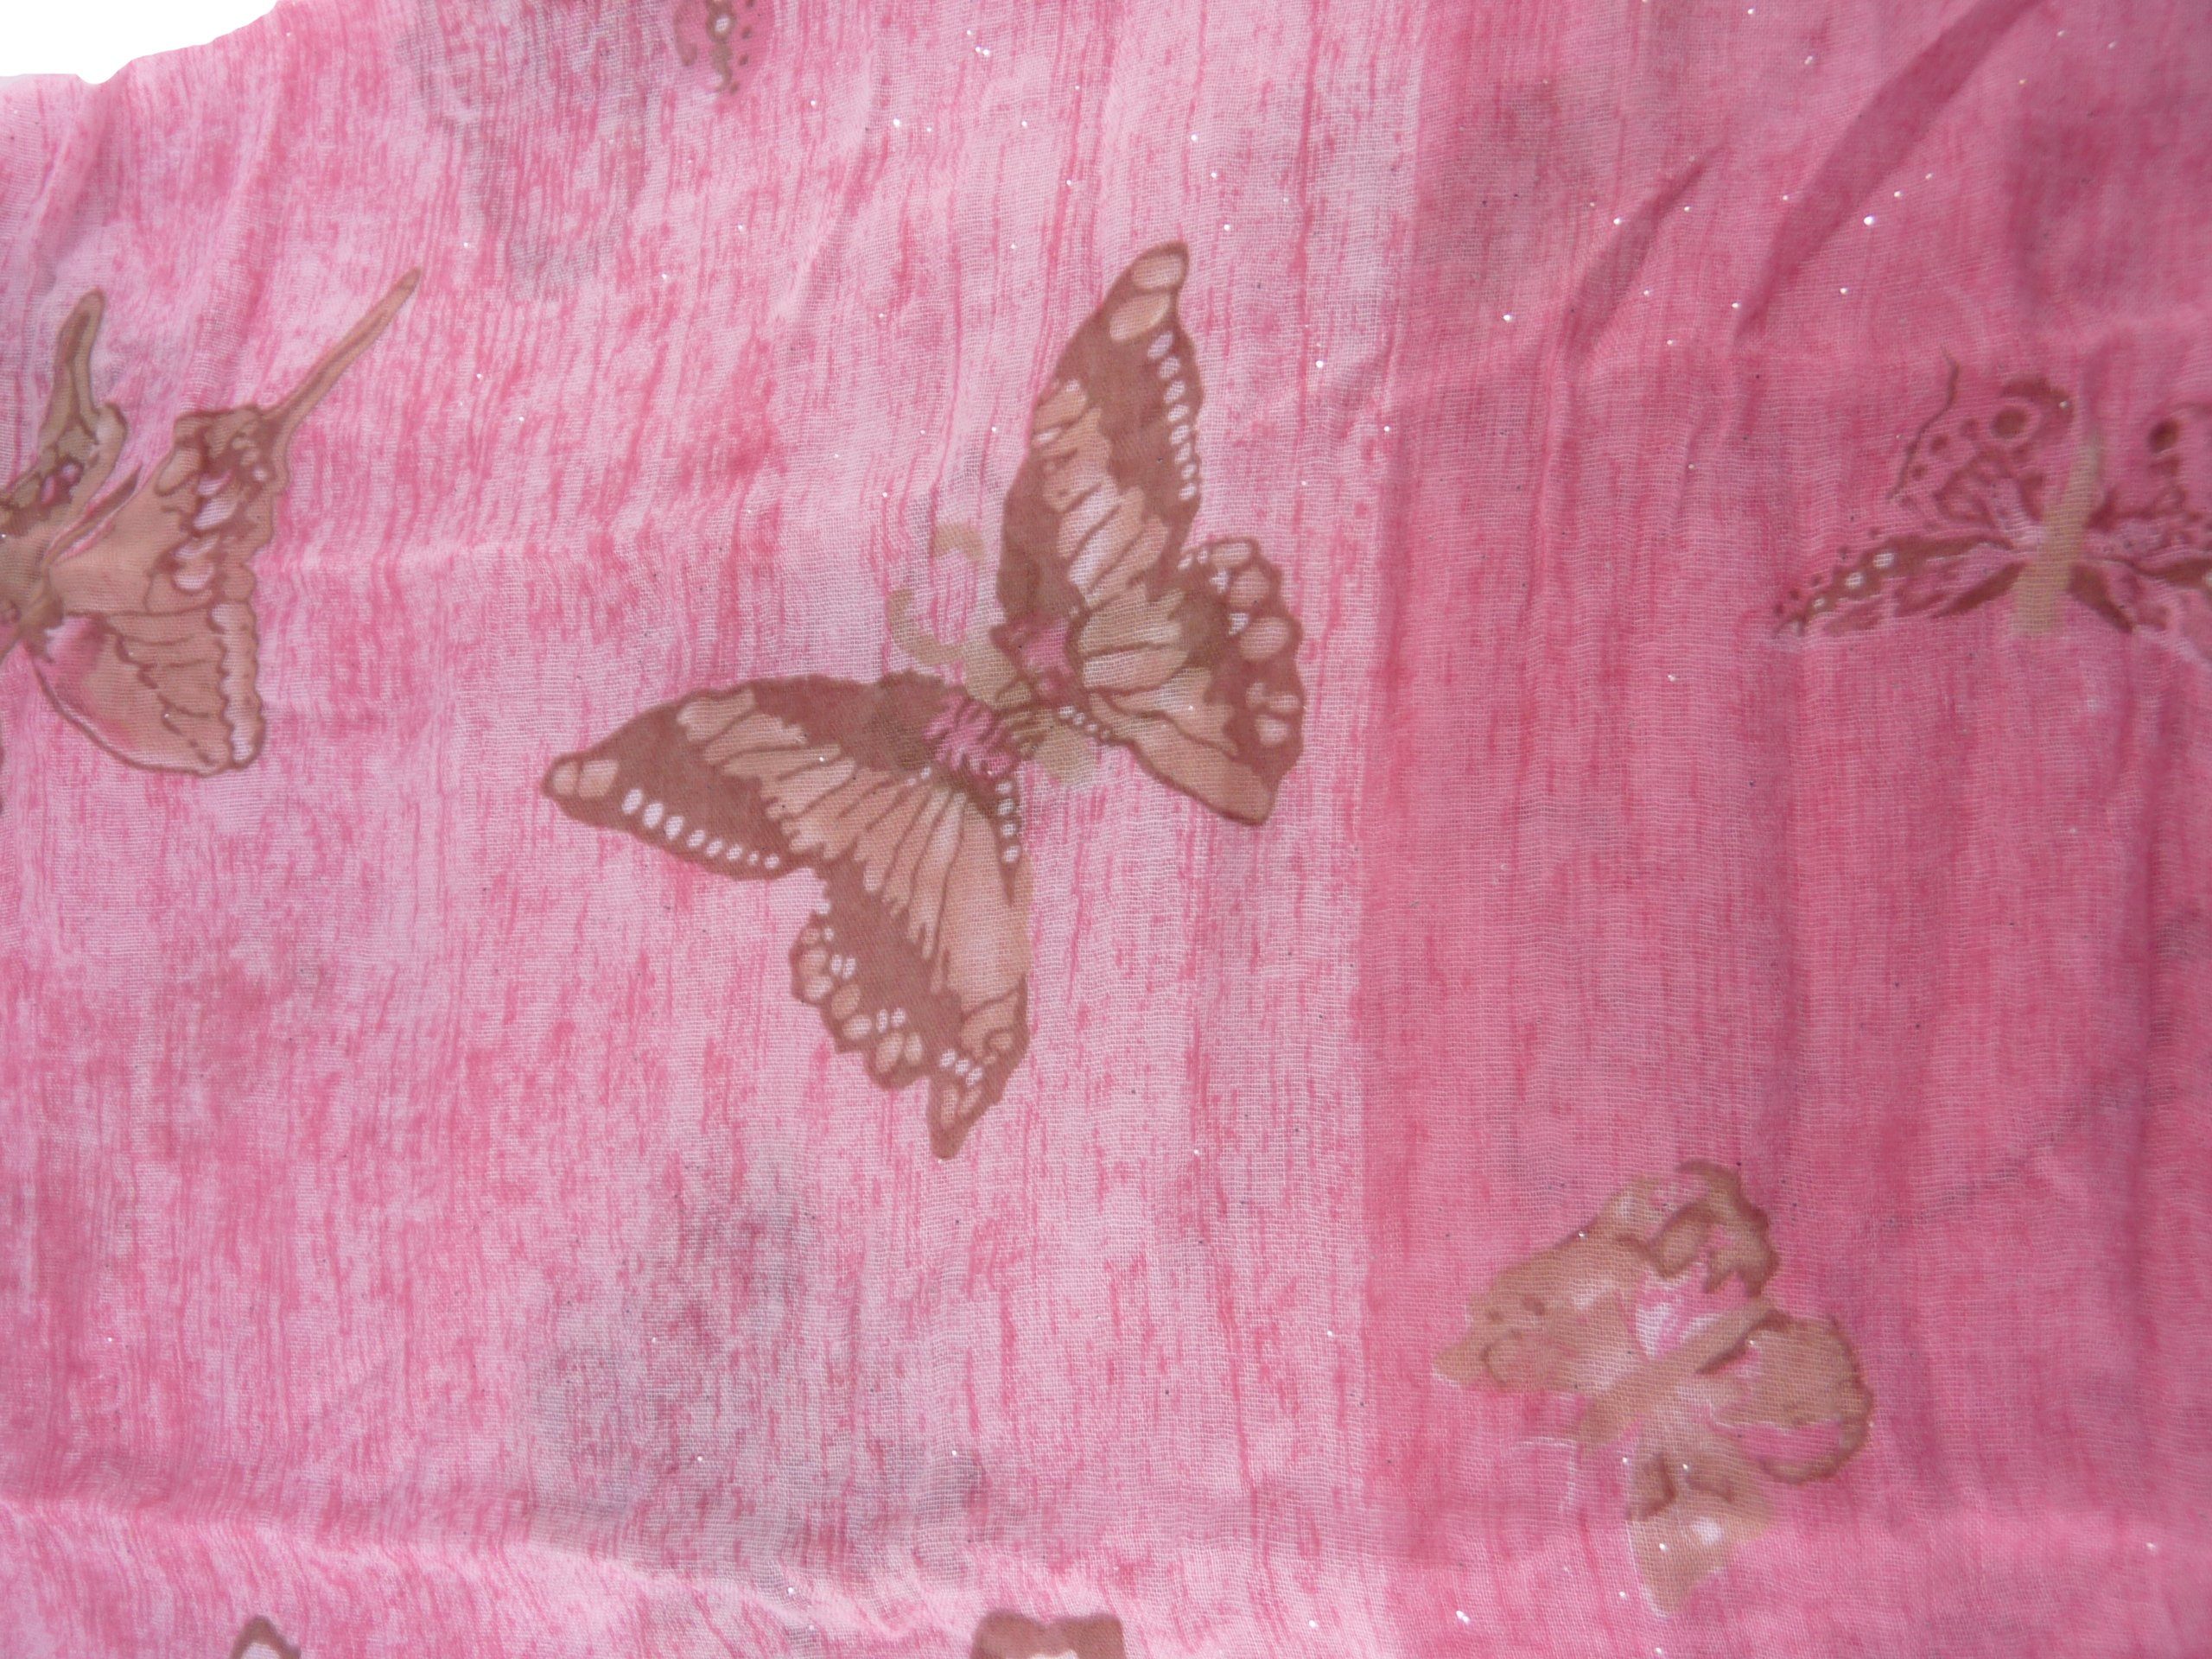 Taschen4life Schal Schmetterlinge, QF-19, Damen leichter Halstuch pink Schal